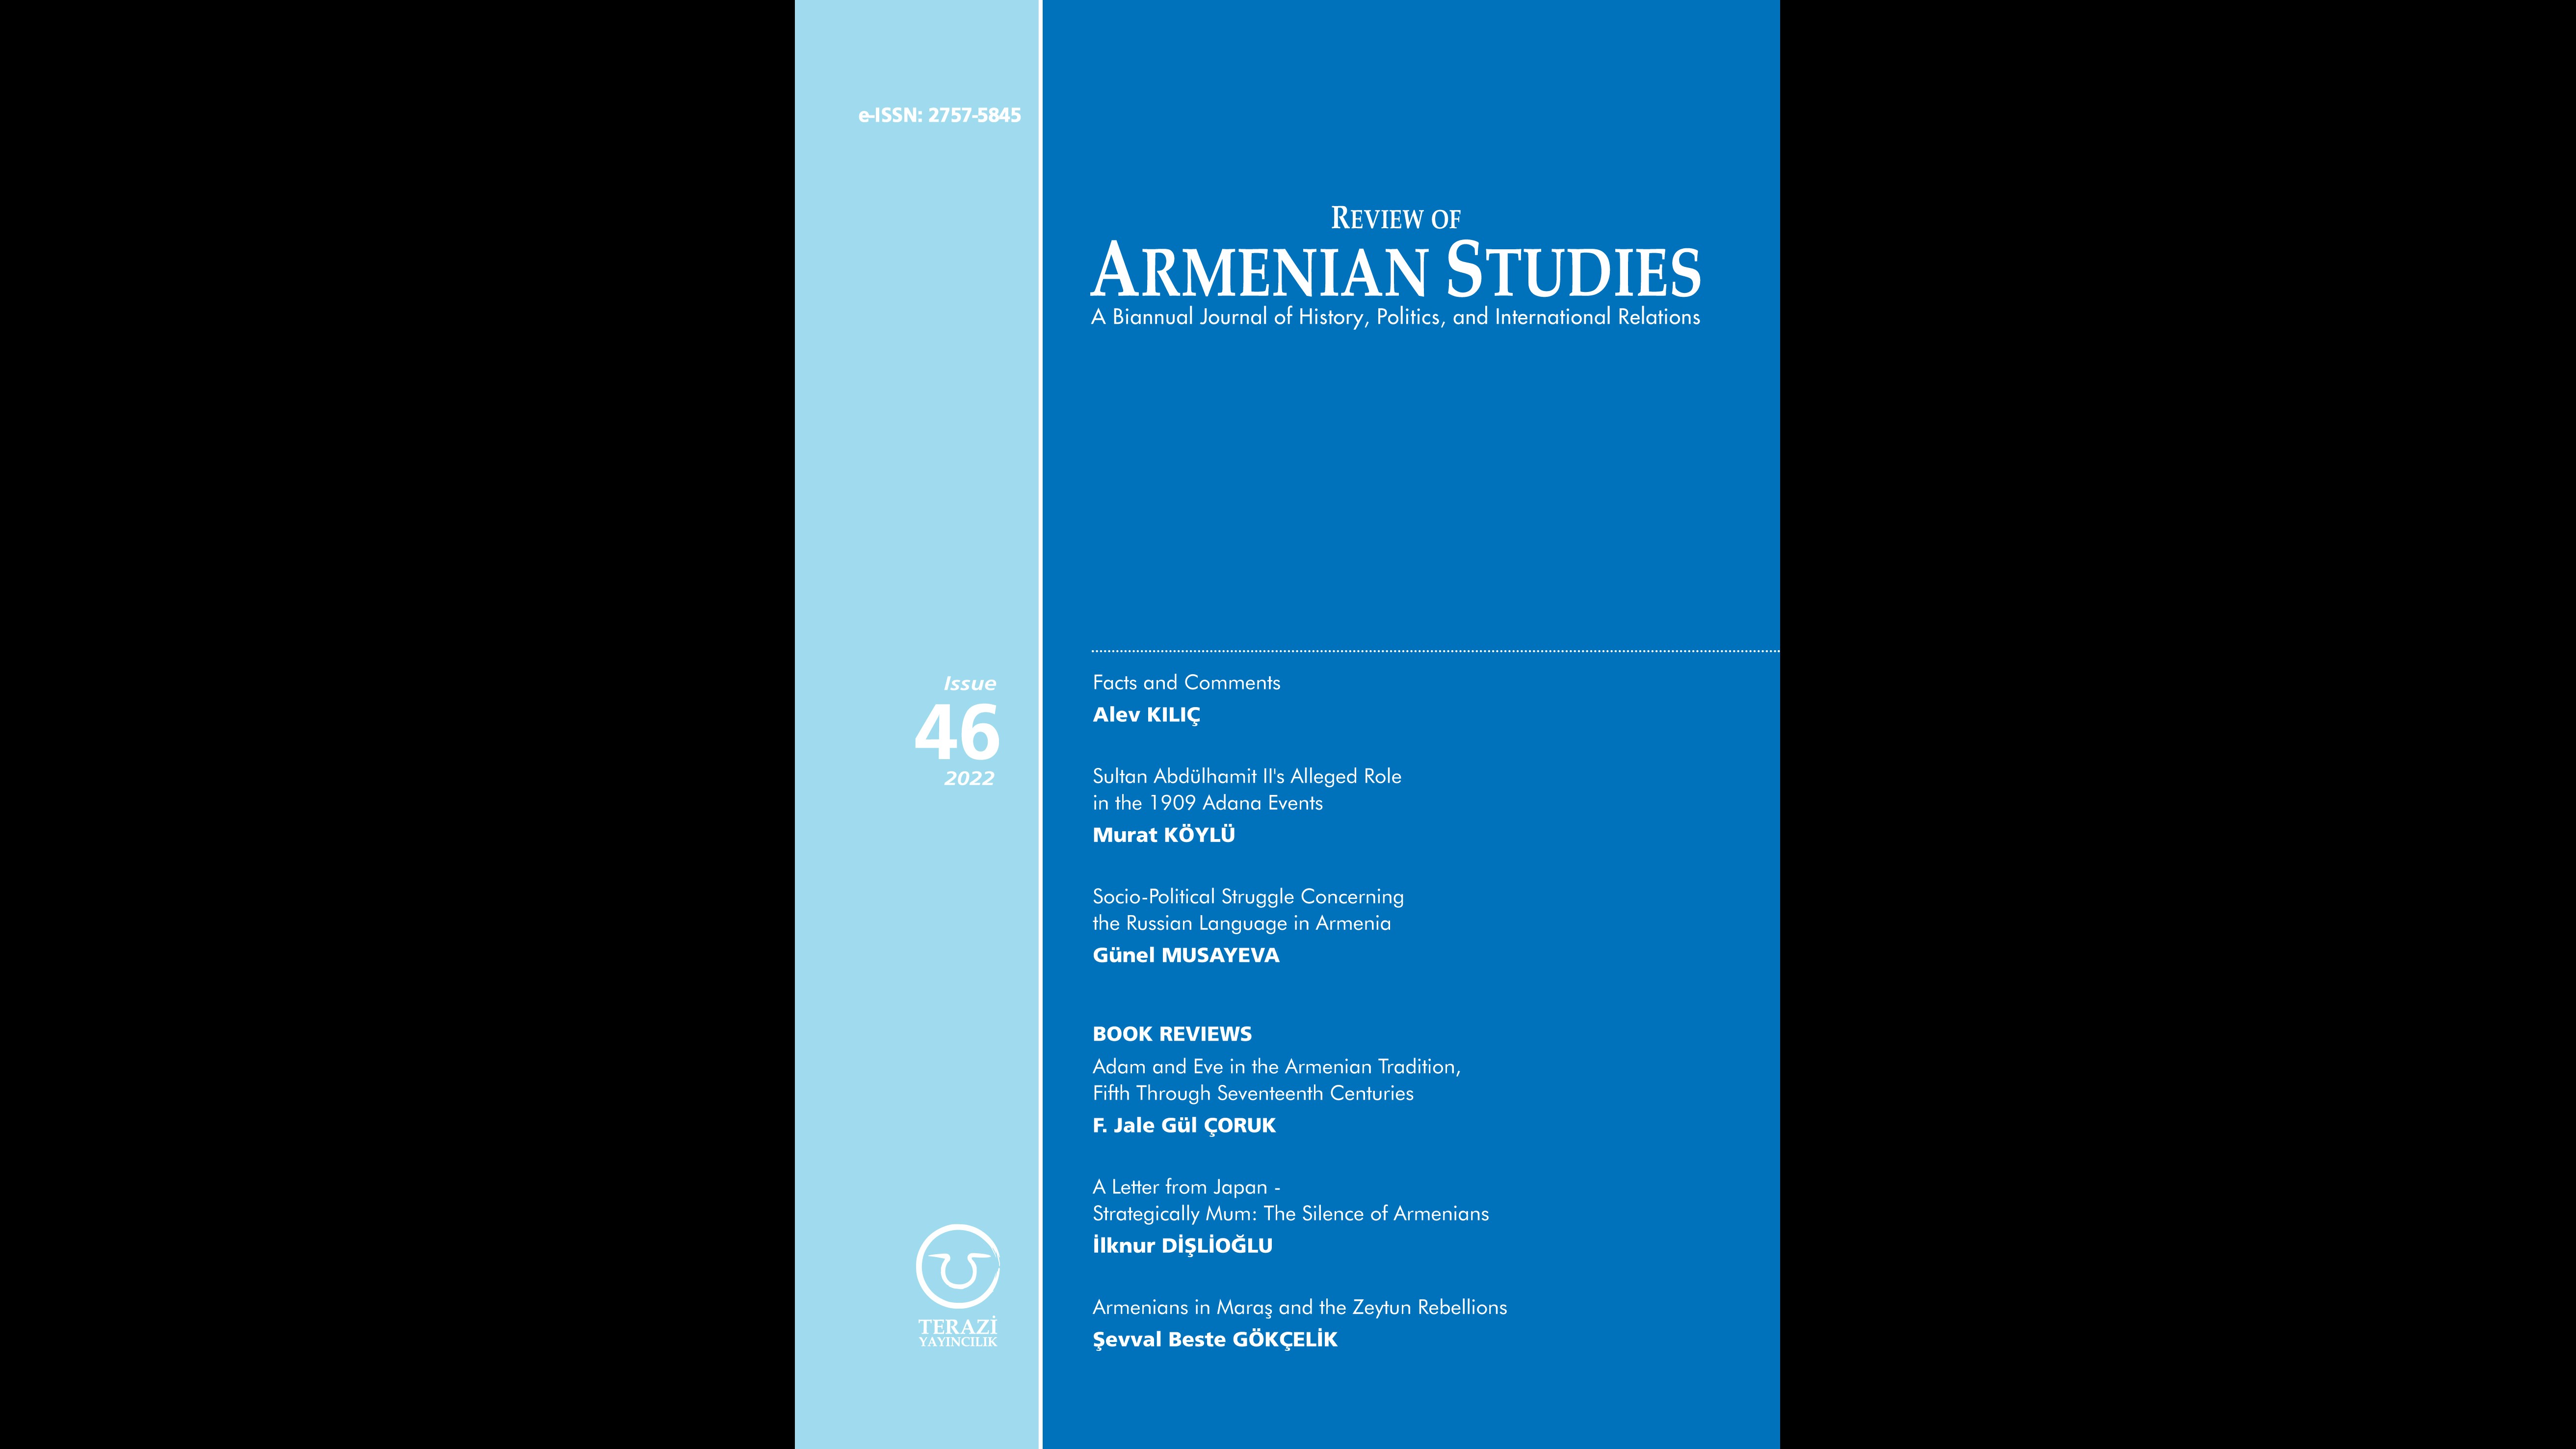 DUYURU: REVIEW OF ARMENIAN STUDIES DERGİSİNİN 46’NCI SAYISI YAYINLANDI